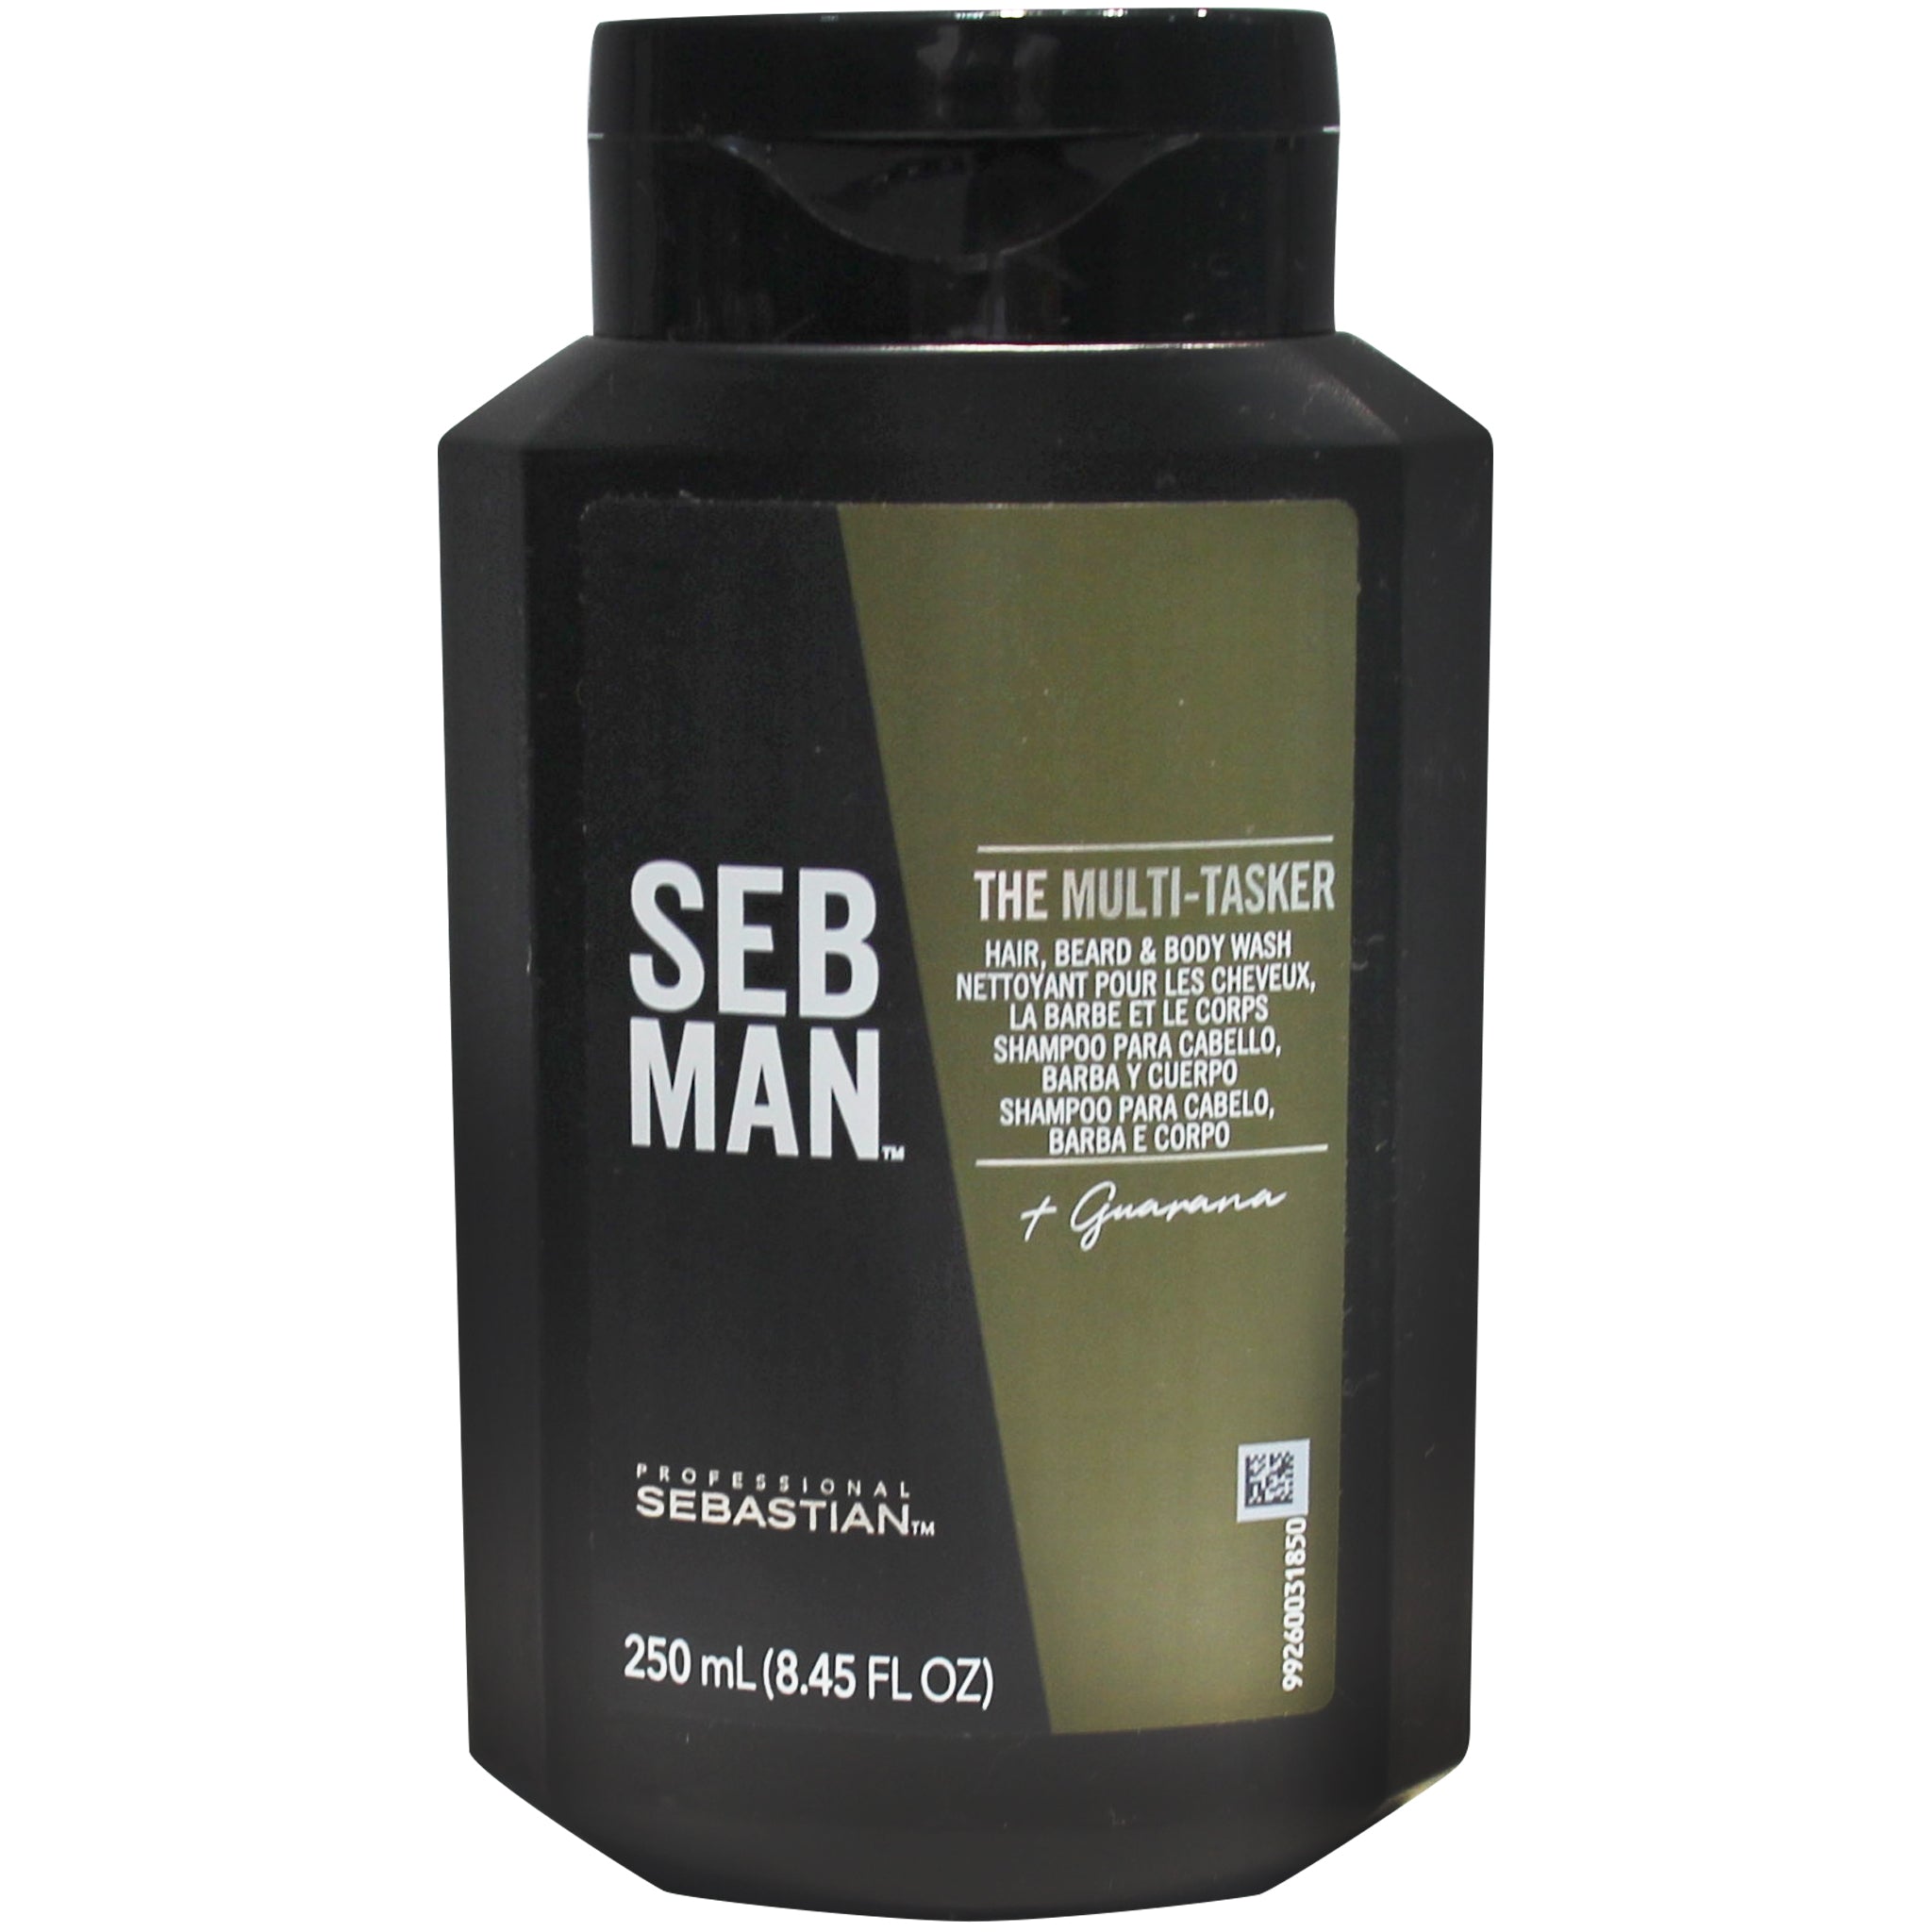 Seb Man The Multistaker 3 en 1  250 ml - Gel para cuerpo, el cabello y la barba 